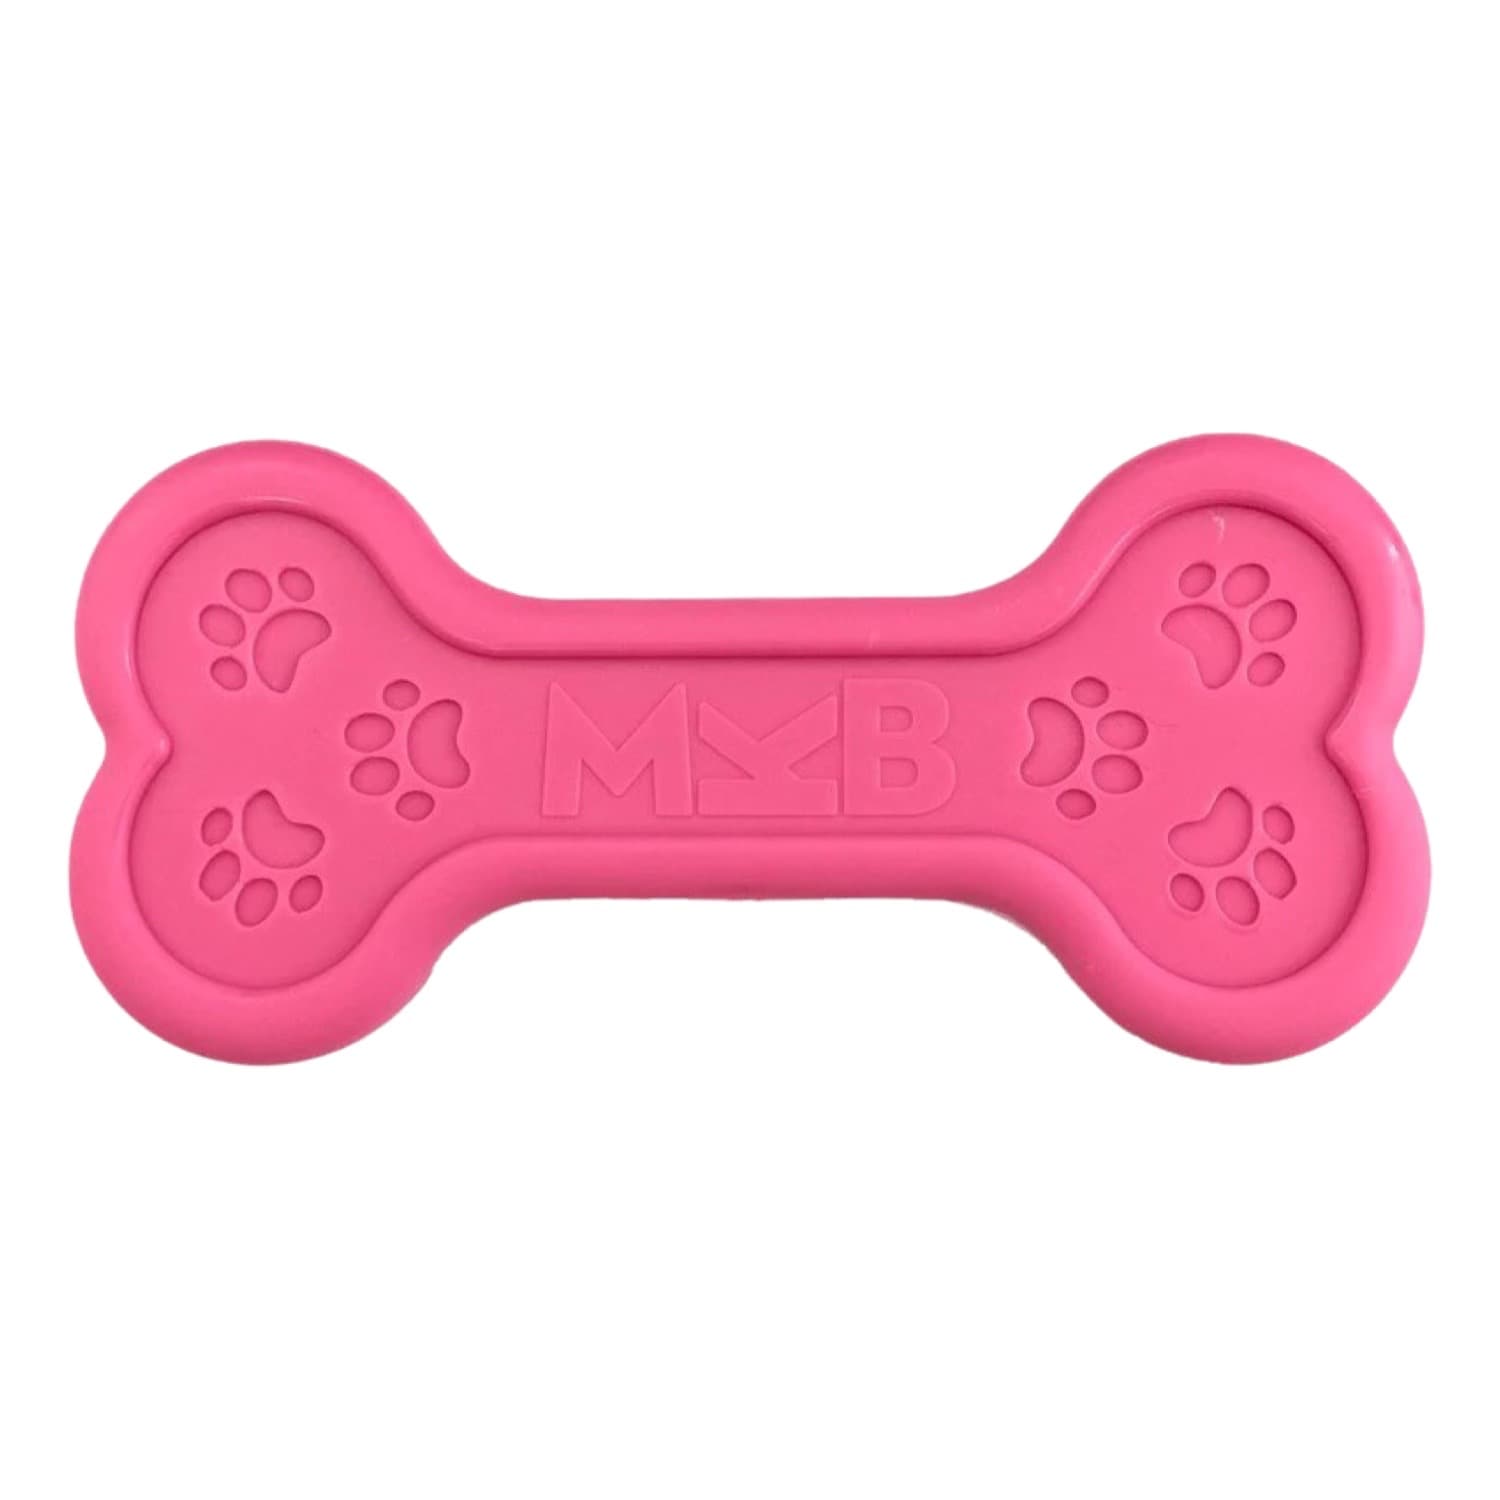 Sodapup Pink MKB Nylon Dog Chew Bone Toy